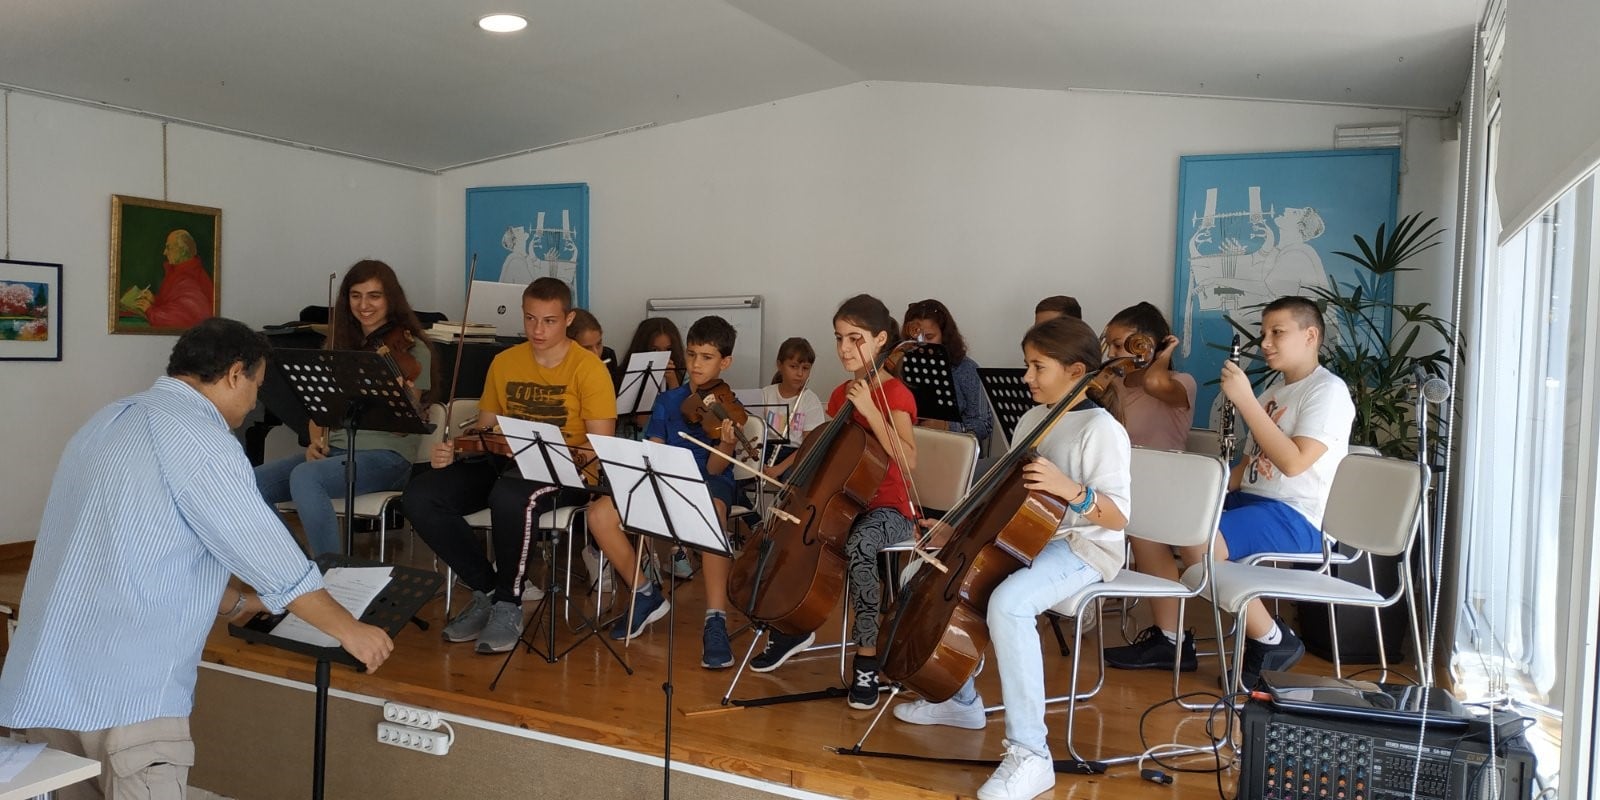 Δωρεάν Μαθήματα Μουσικής από το El Sistema Greece στο Καλογεροπούλειο Ωδείο Κορίνθου